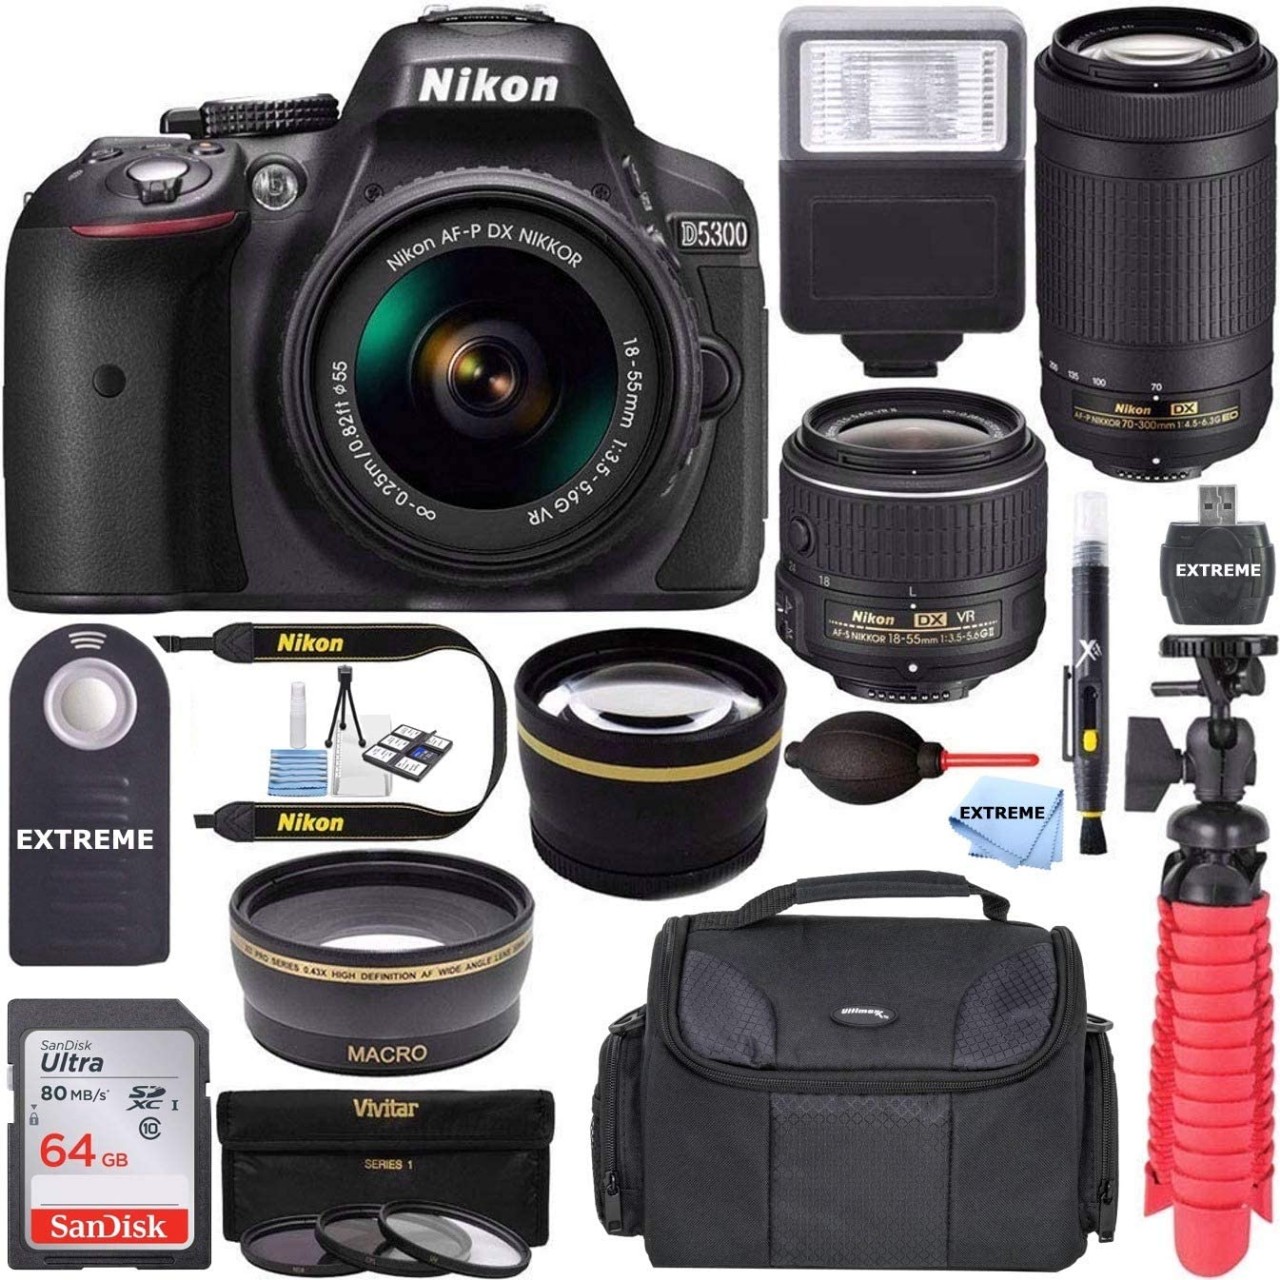 Nikon D5300 24.2 MP DSLR Camera + AF-P DX 18-55mm & 70-300mm NIKKOR Zoom Lens Kit + 64GB Memory + Ph